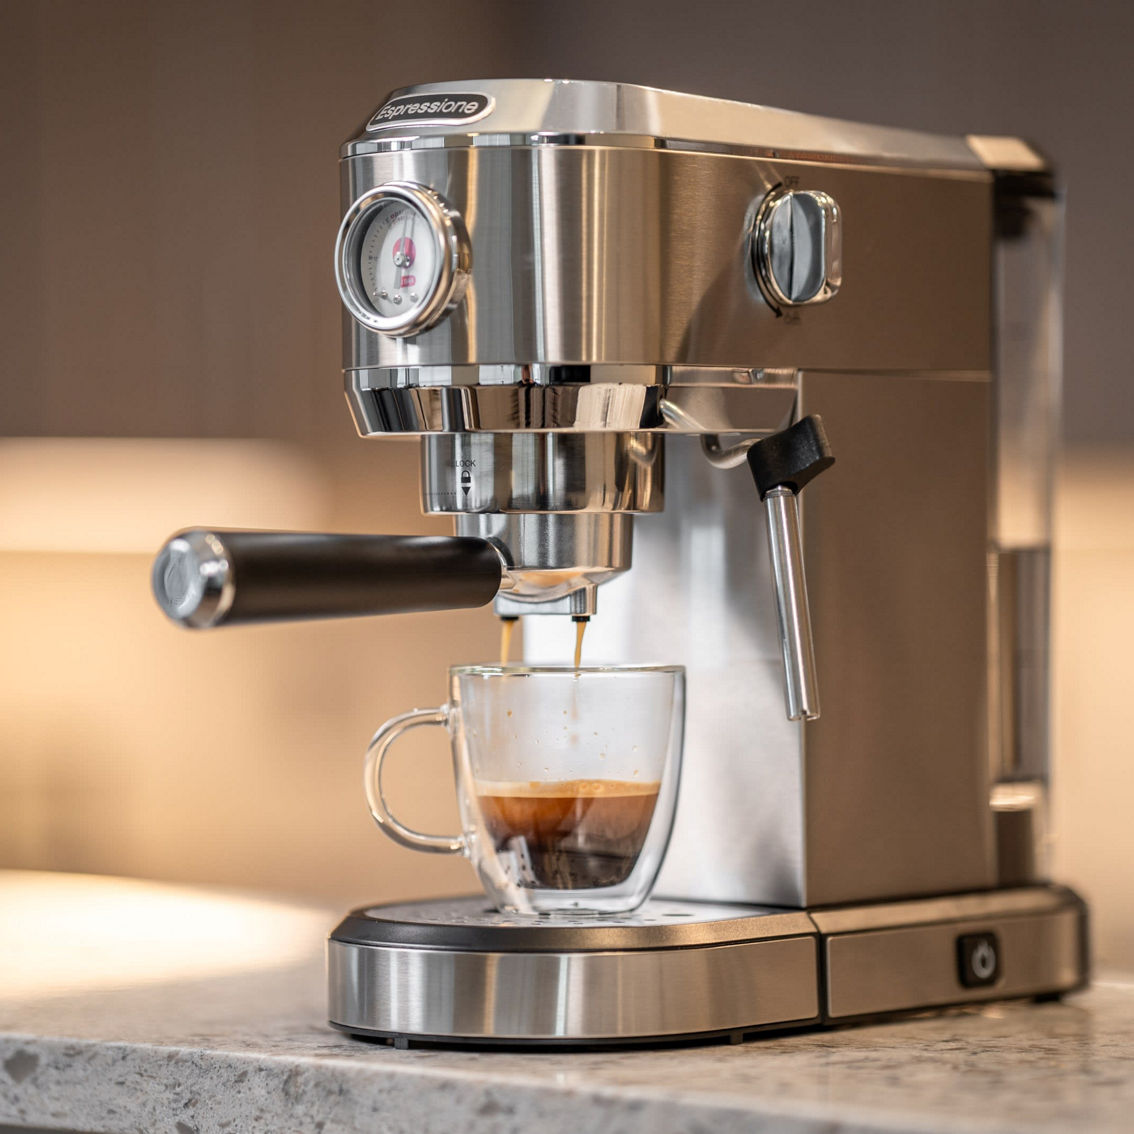 Espressione Flex 3-in-1 Espresso Coffee Machine - Image 2 of 5